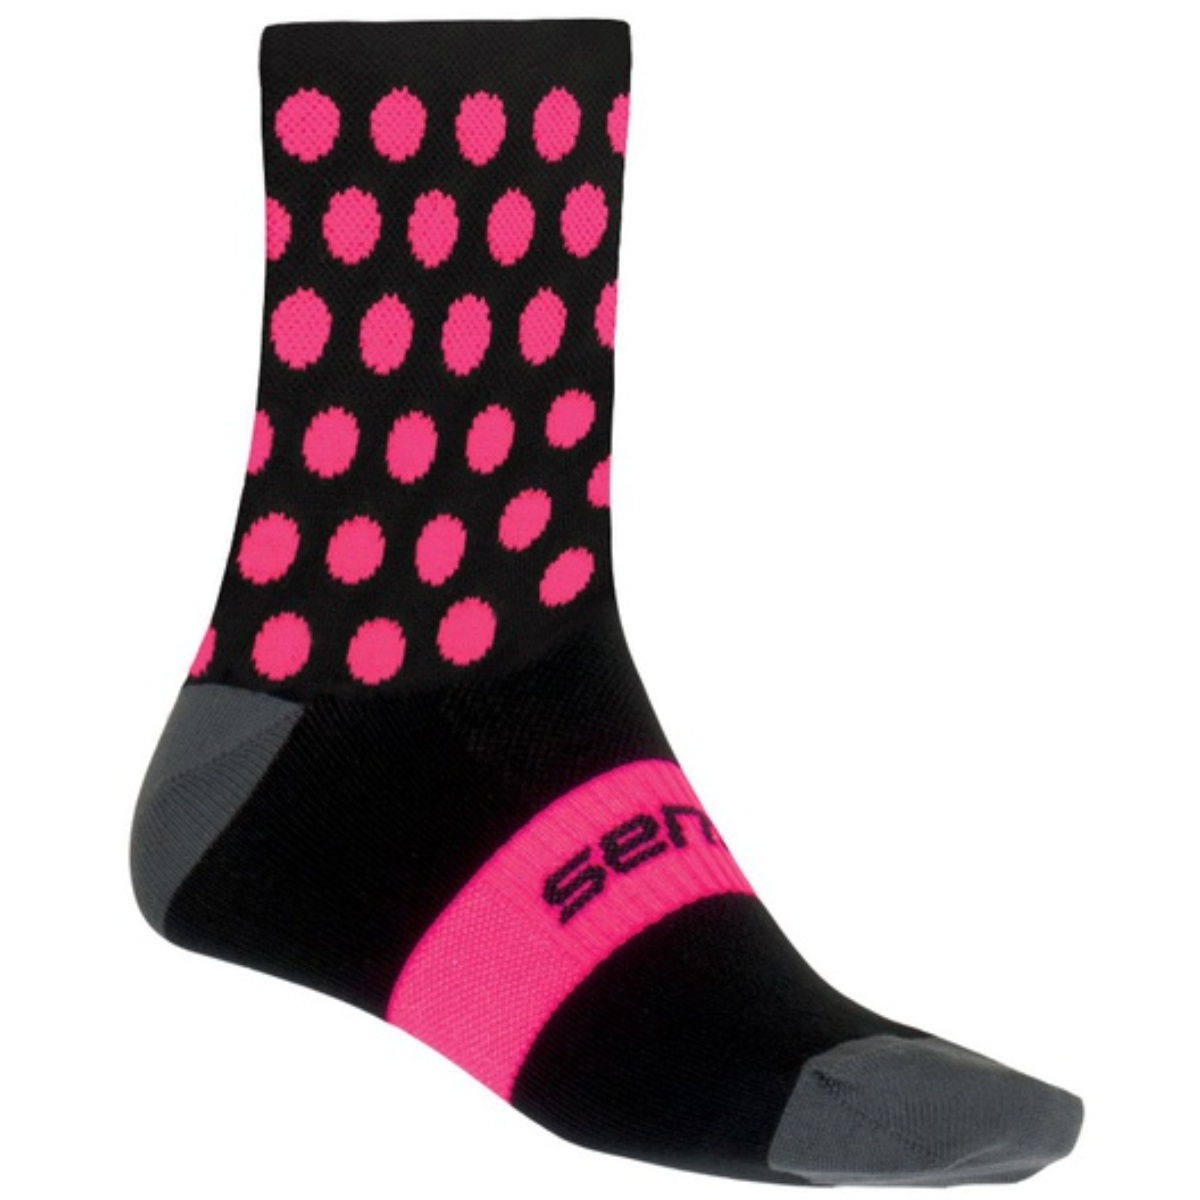 E-shop Sensor ponožky DOTS NEW černo-růžové